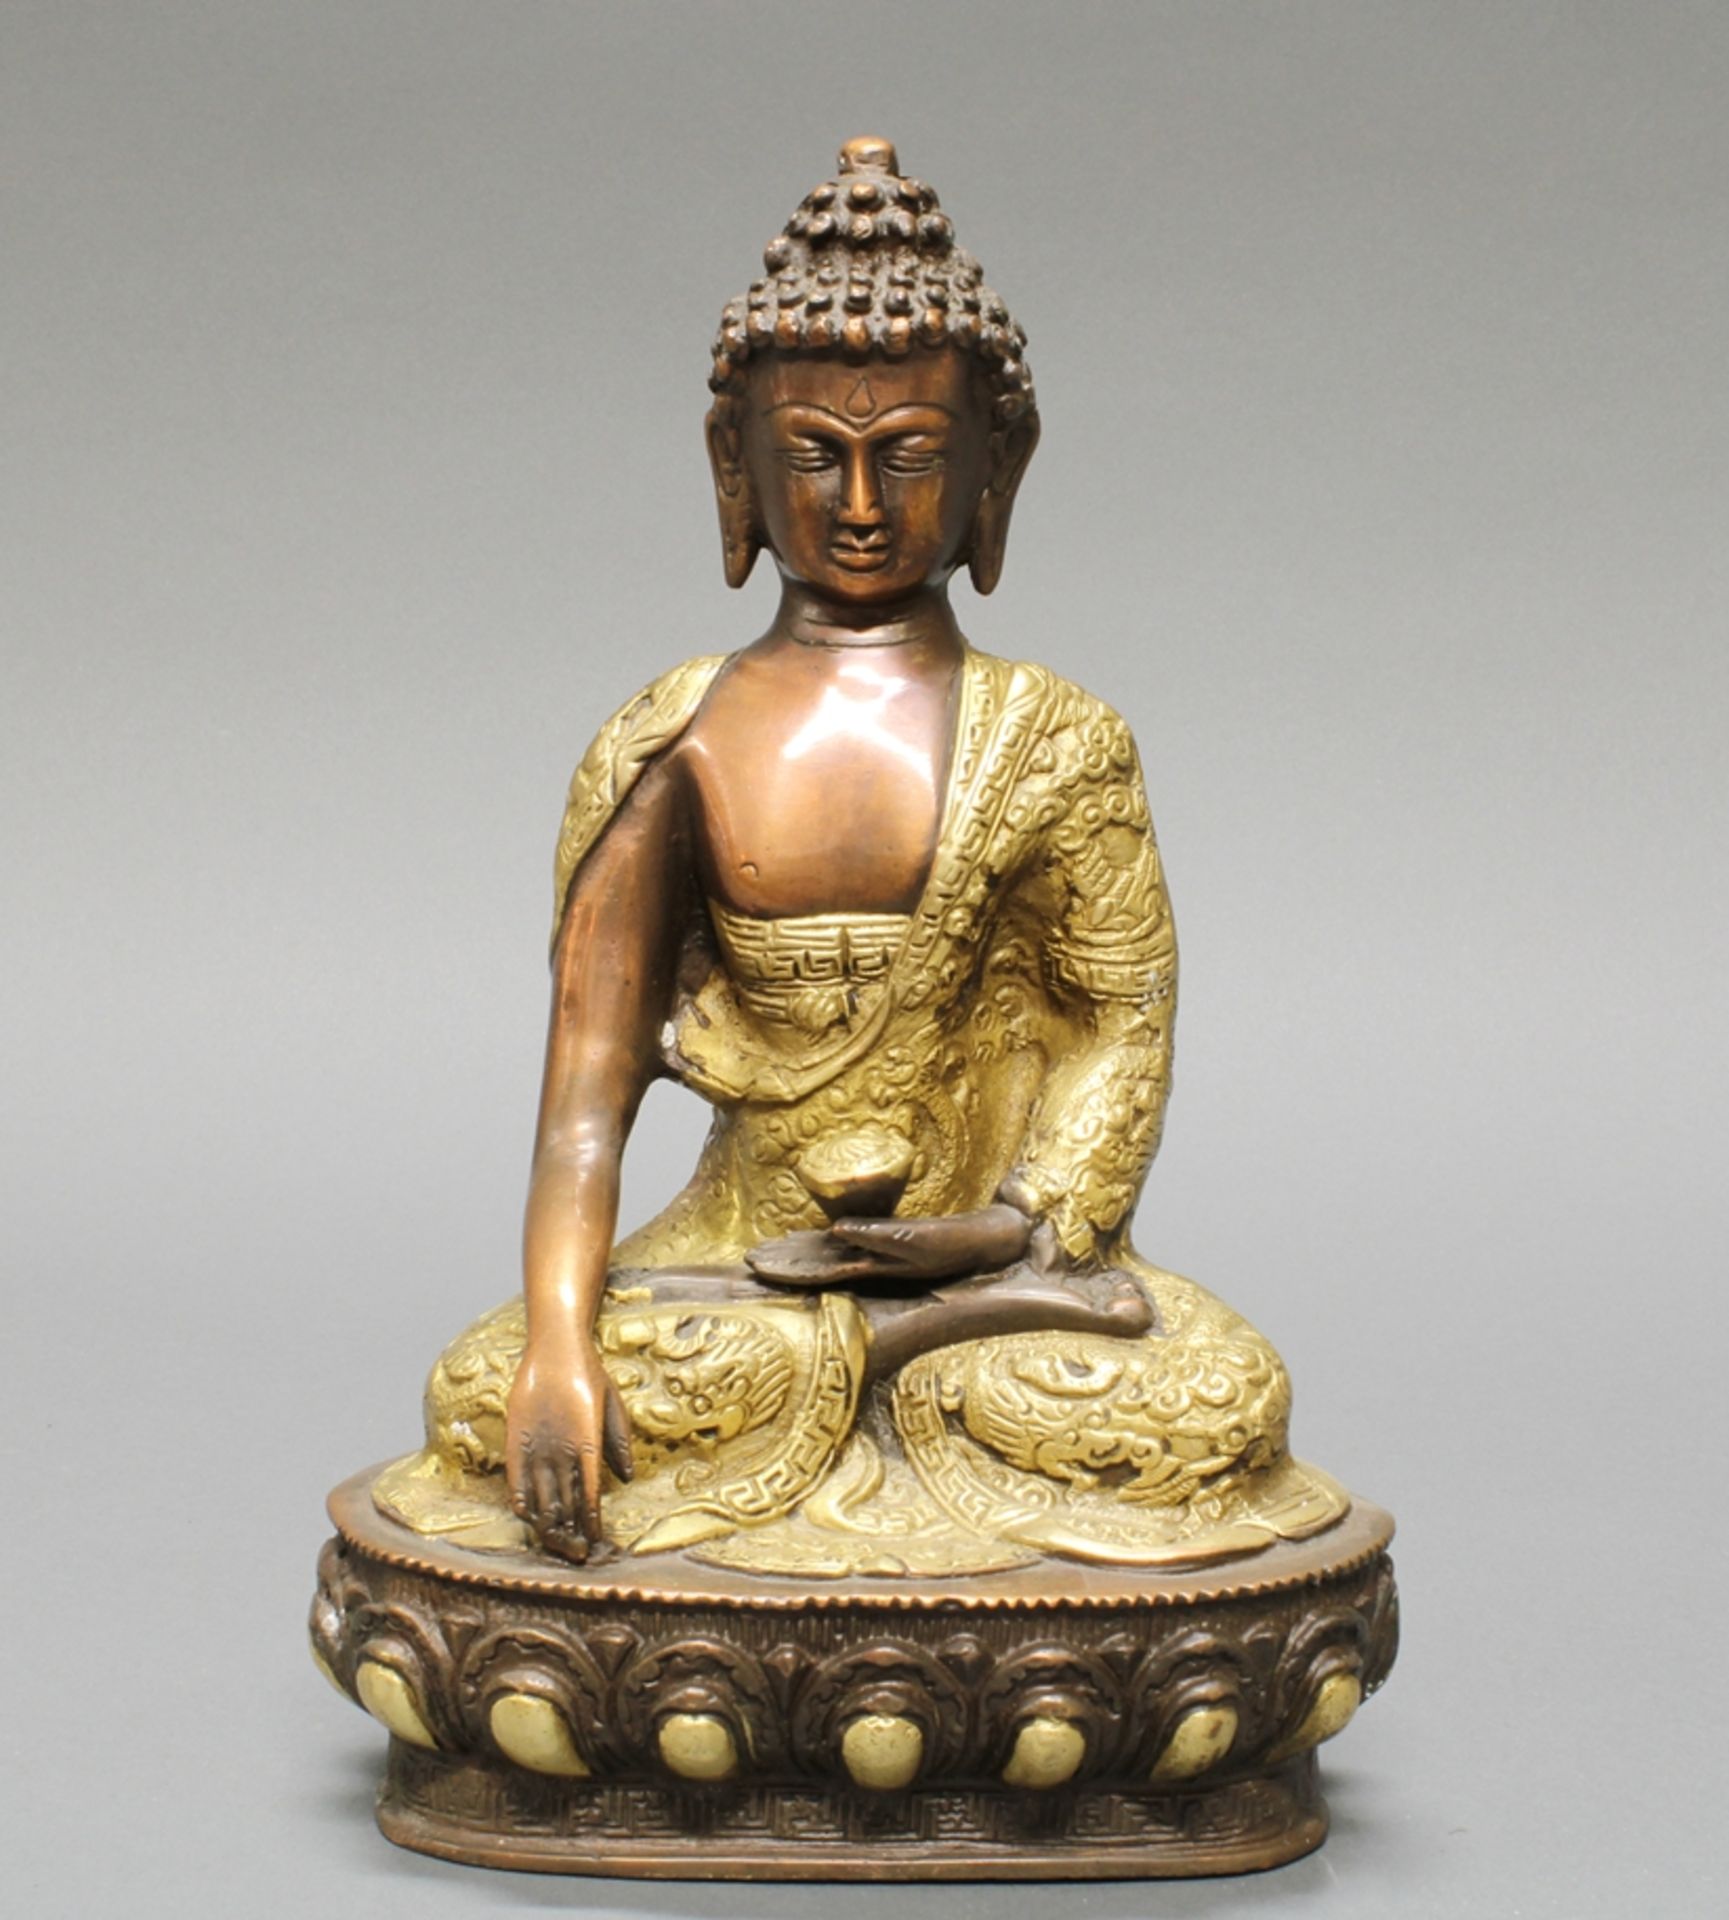 Sitzender Buddha, Nepal, 20. Jh., Messingbronze, teils vergoldet, die Hände in mudra, auf Lotossock